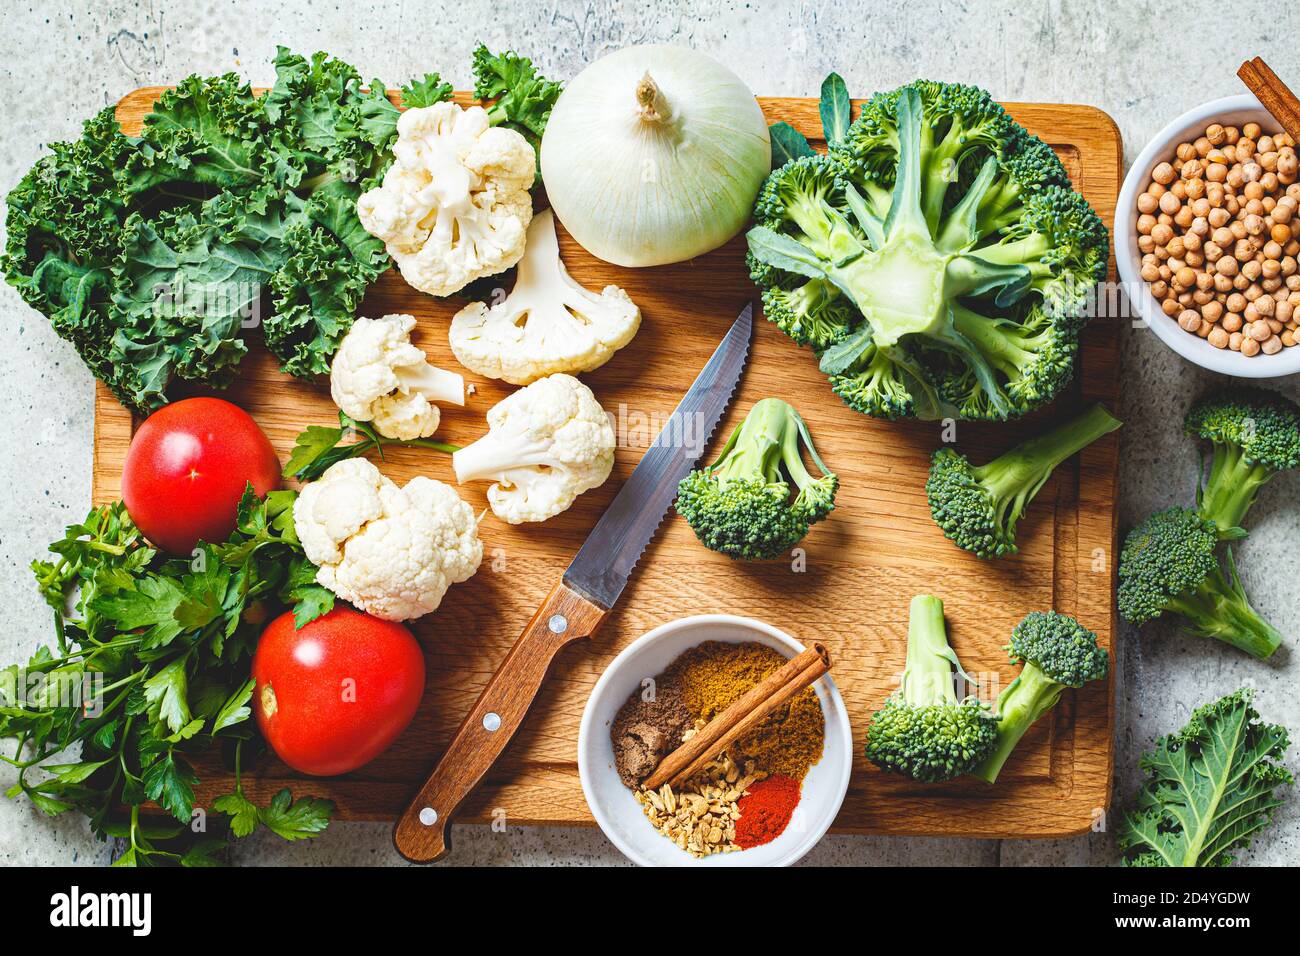 Fond de cuisson avec des légumes frais, des épices et des haricots. Ingrédients crus pour la cuisson du curry végétarien avec des légumes et des pois chiches sur un boa bois Banque D'Images